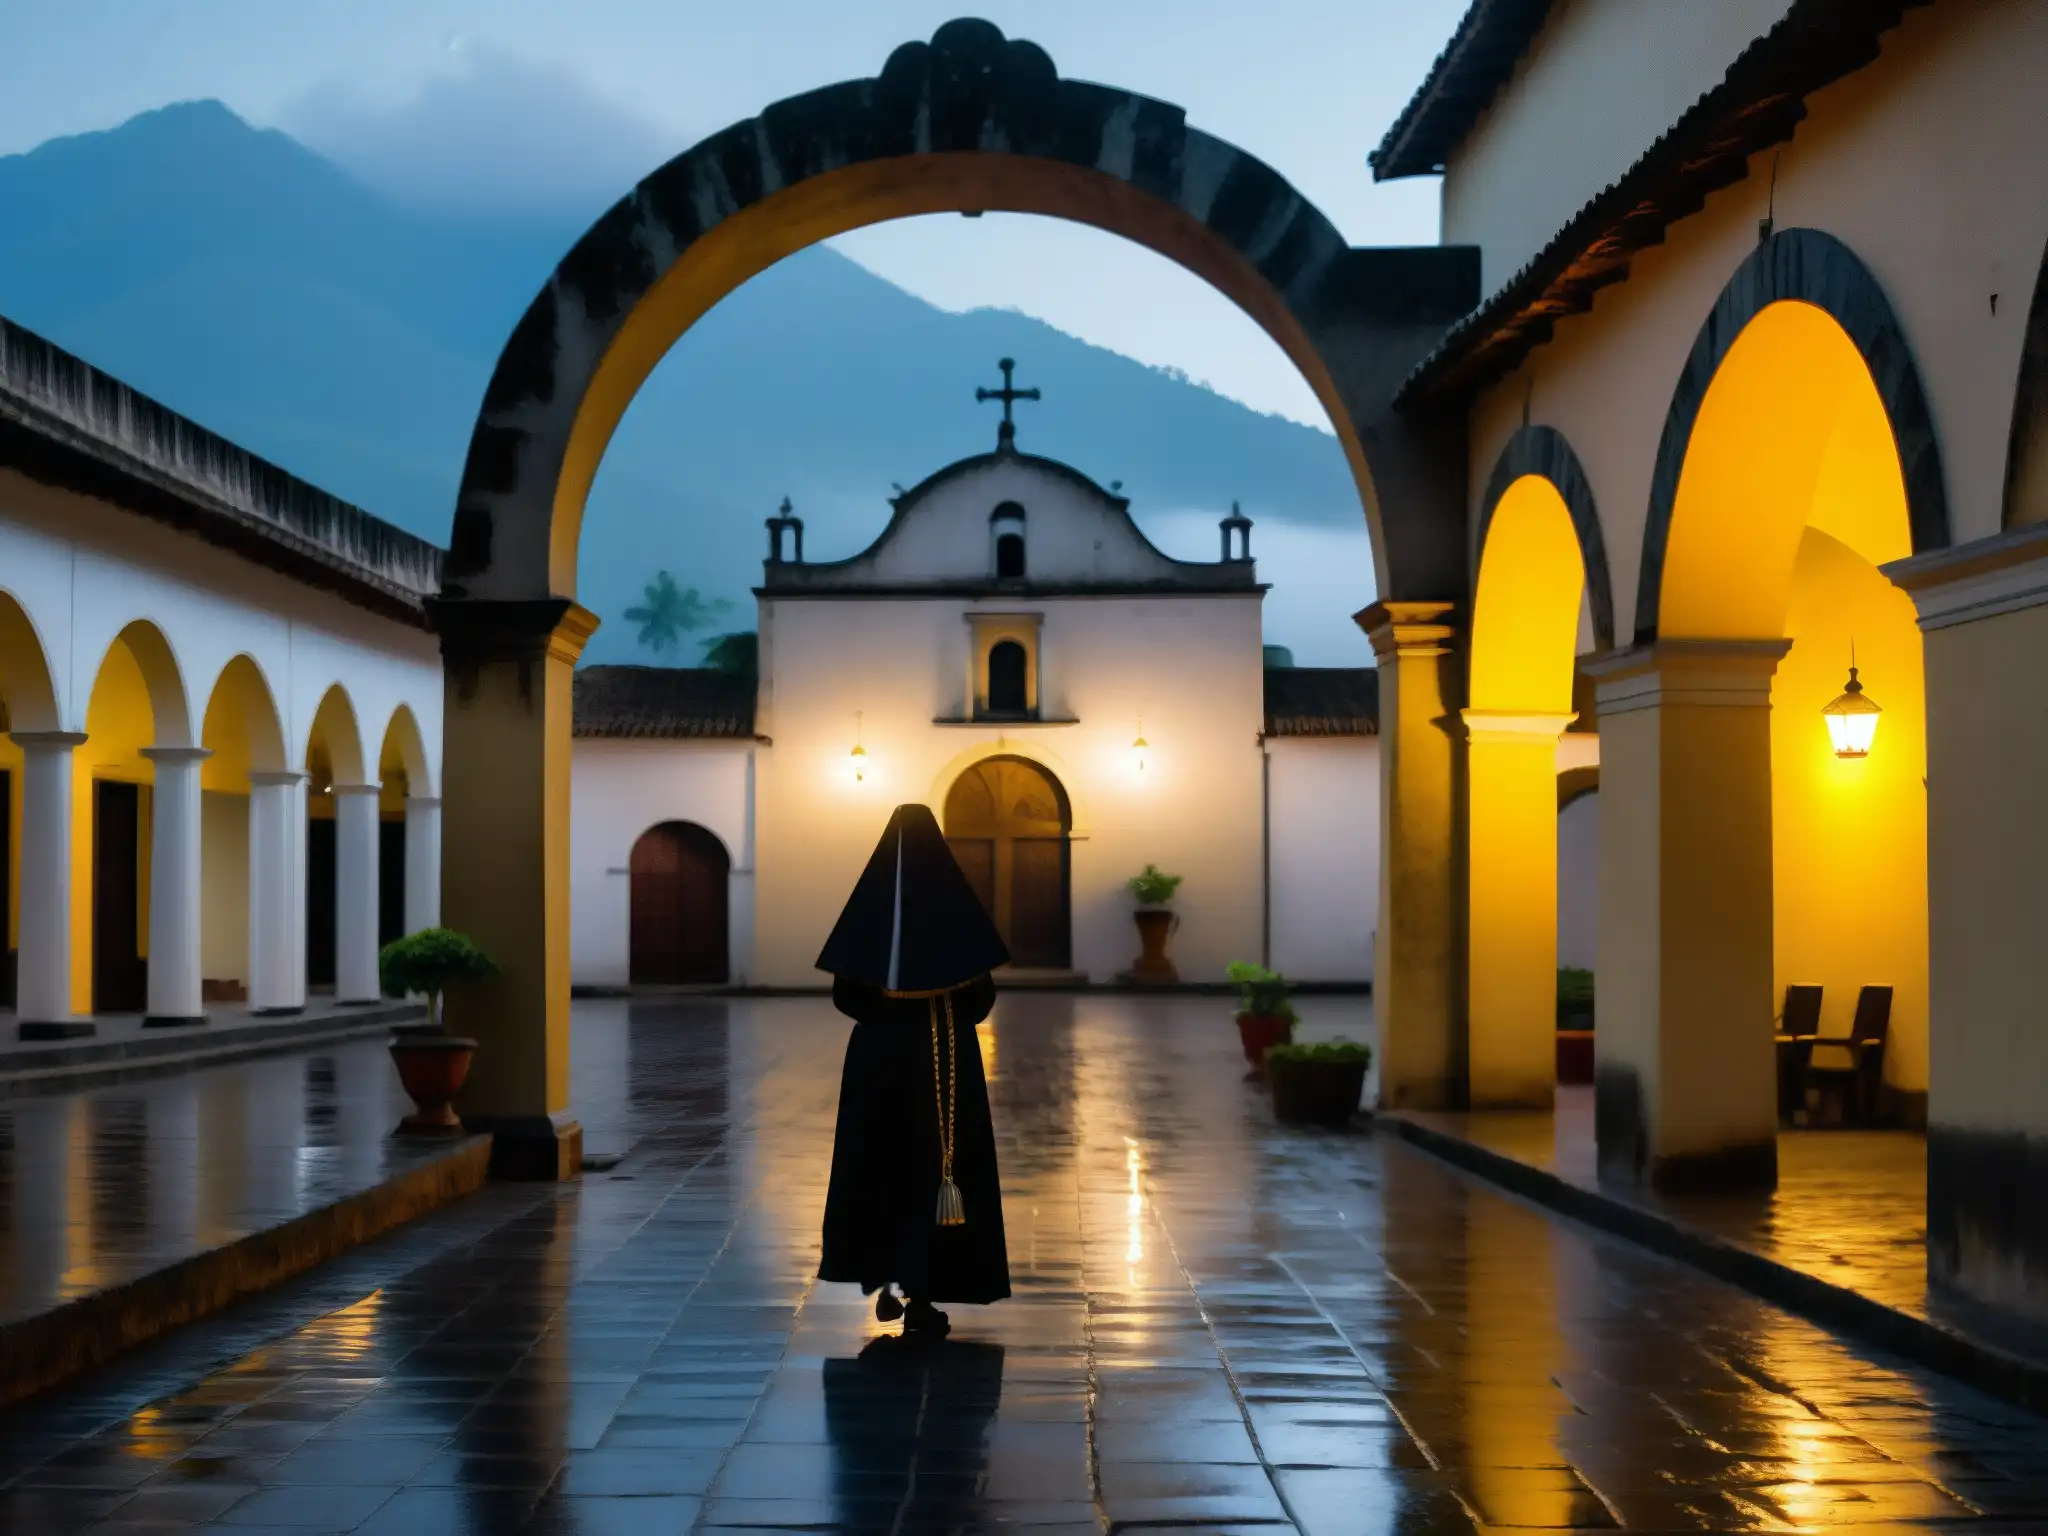 Silueta de la Monja Blanca en Antigua Guatemala, envuelta en misterio y leyenda